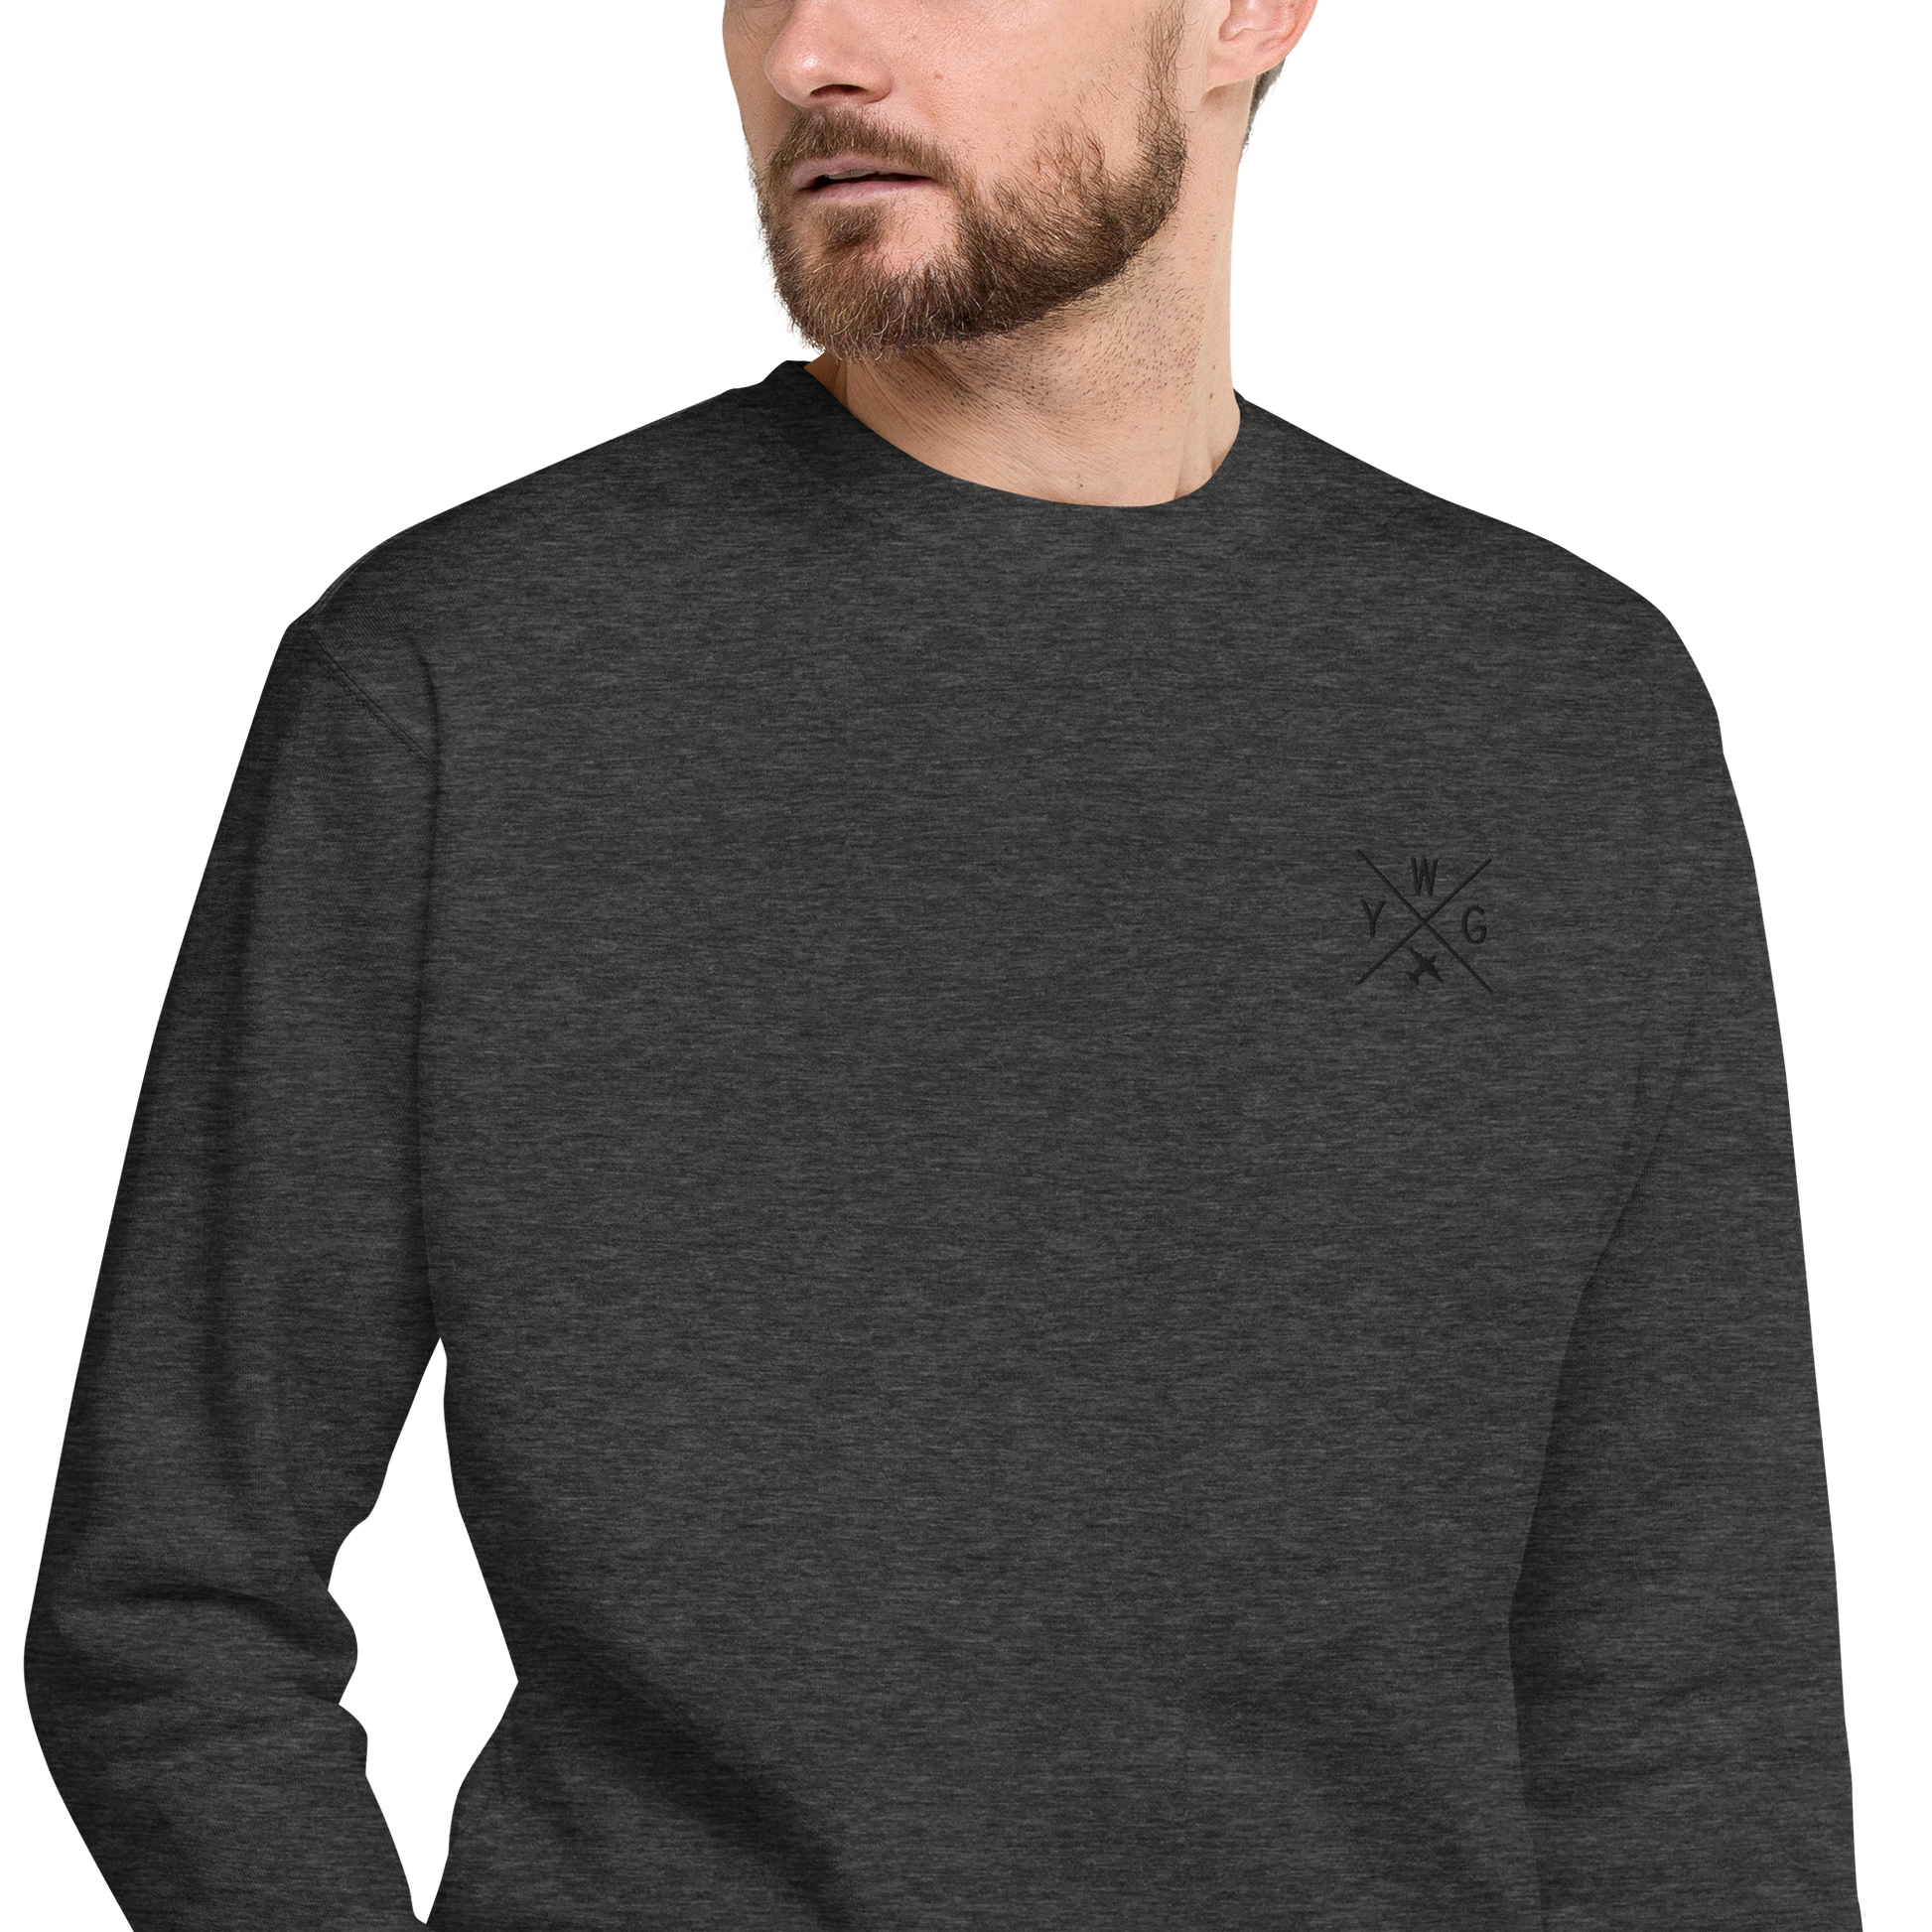 Crossed-X Premium Sweatshirt • YWG Winnipeg • YHM Designs - Image 07